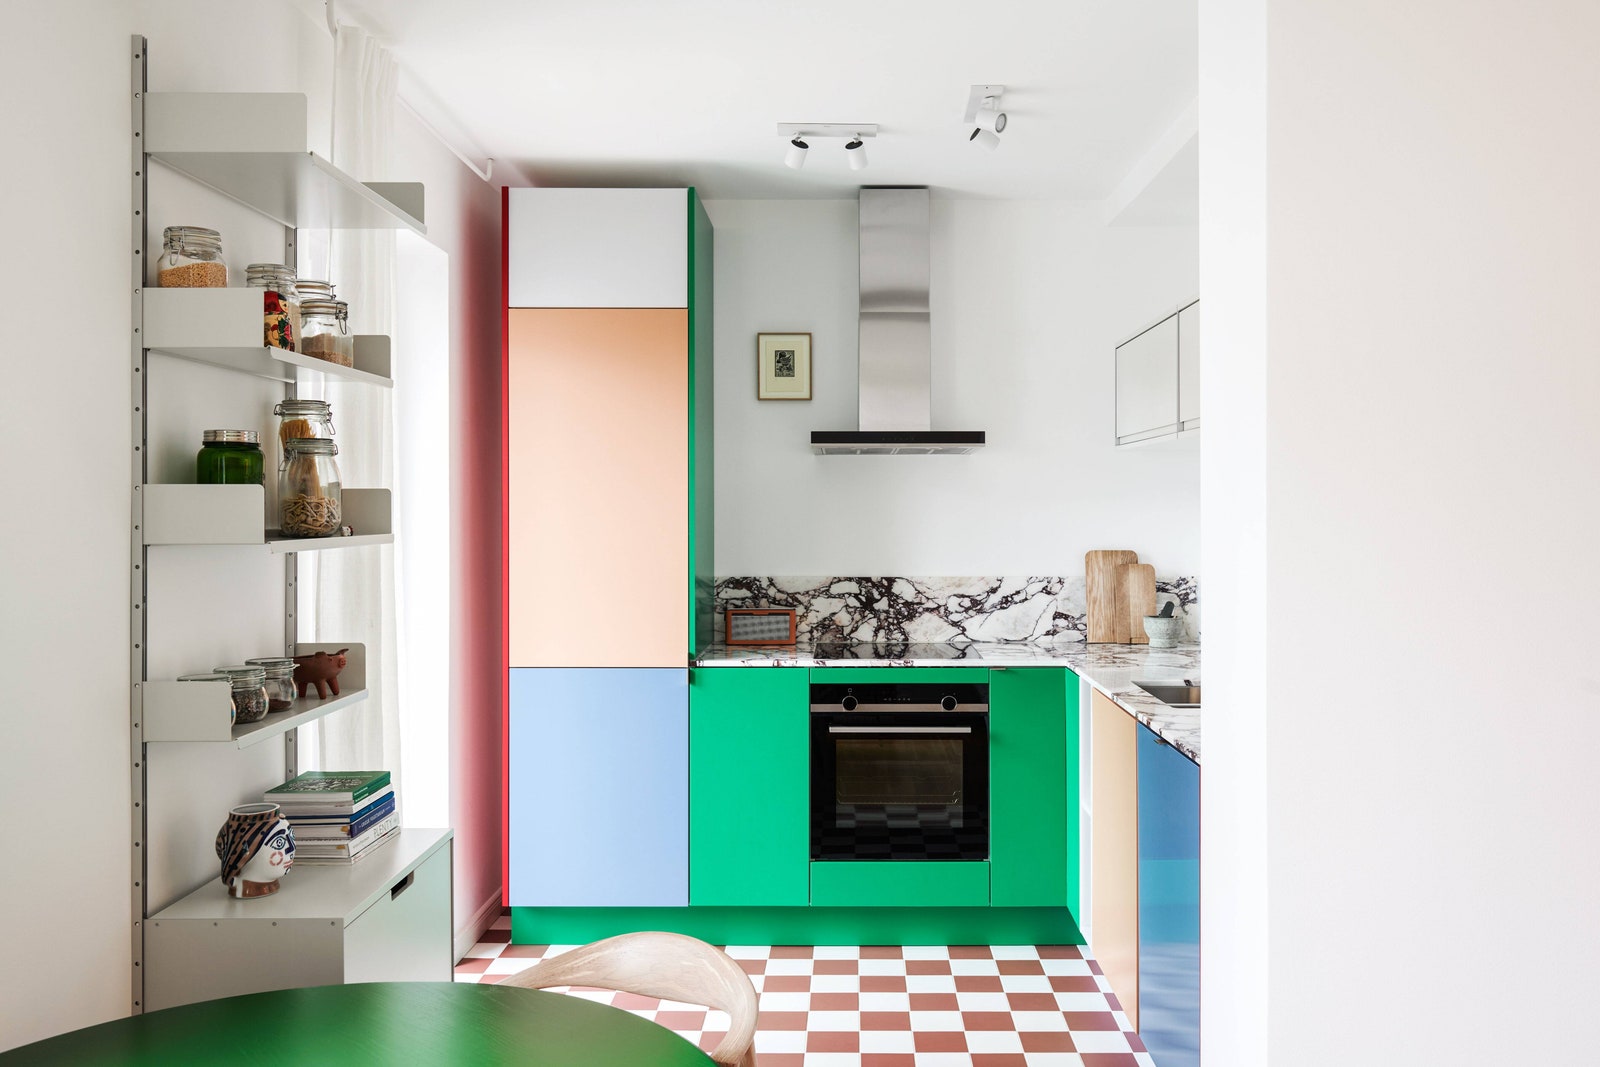 La cuisine rénovée de Yulia Yushchik dans son appartement berlinois consiste à mélanger les motifs, les couleurs et les textures.